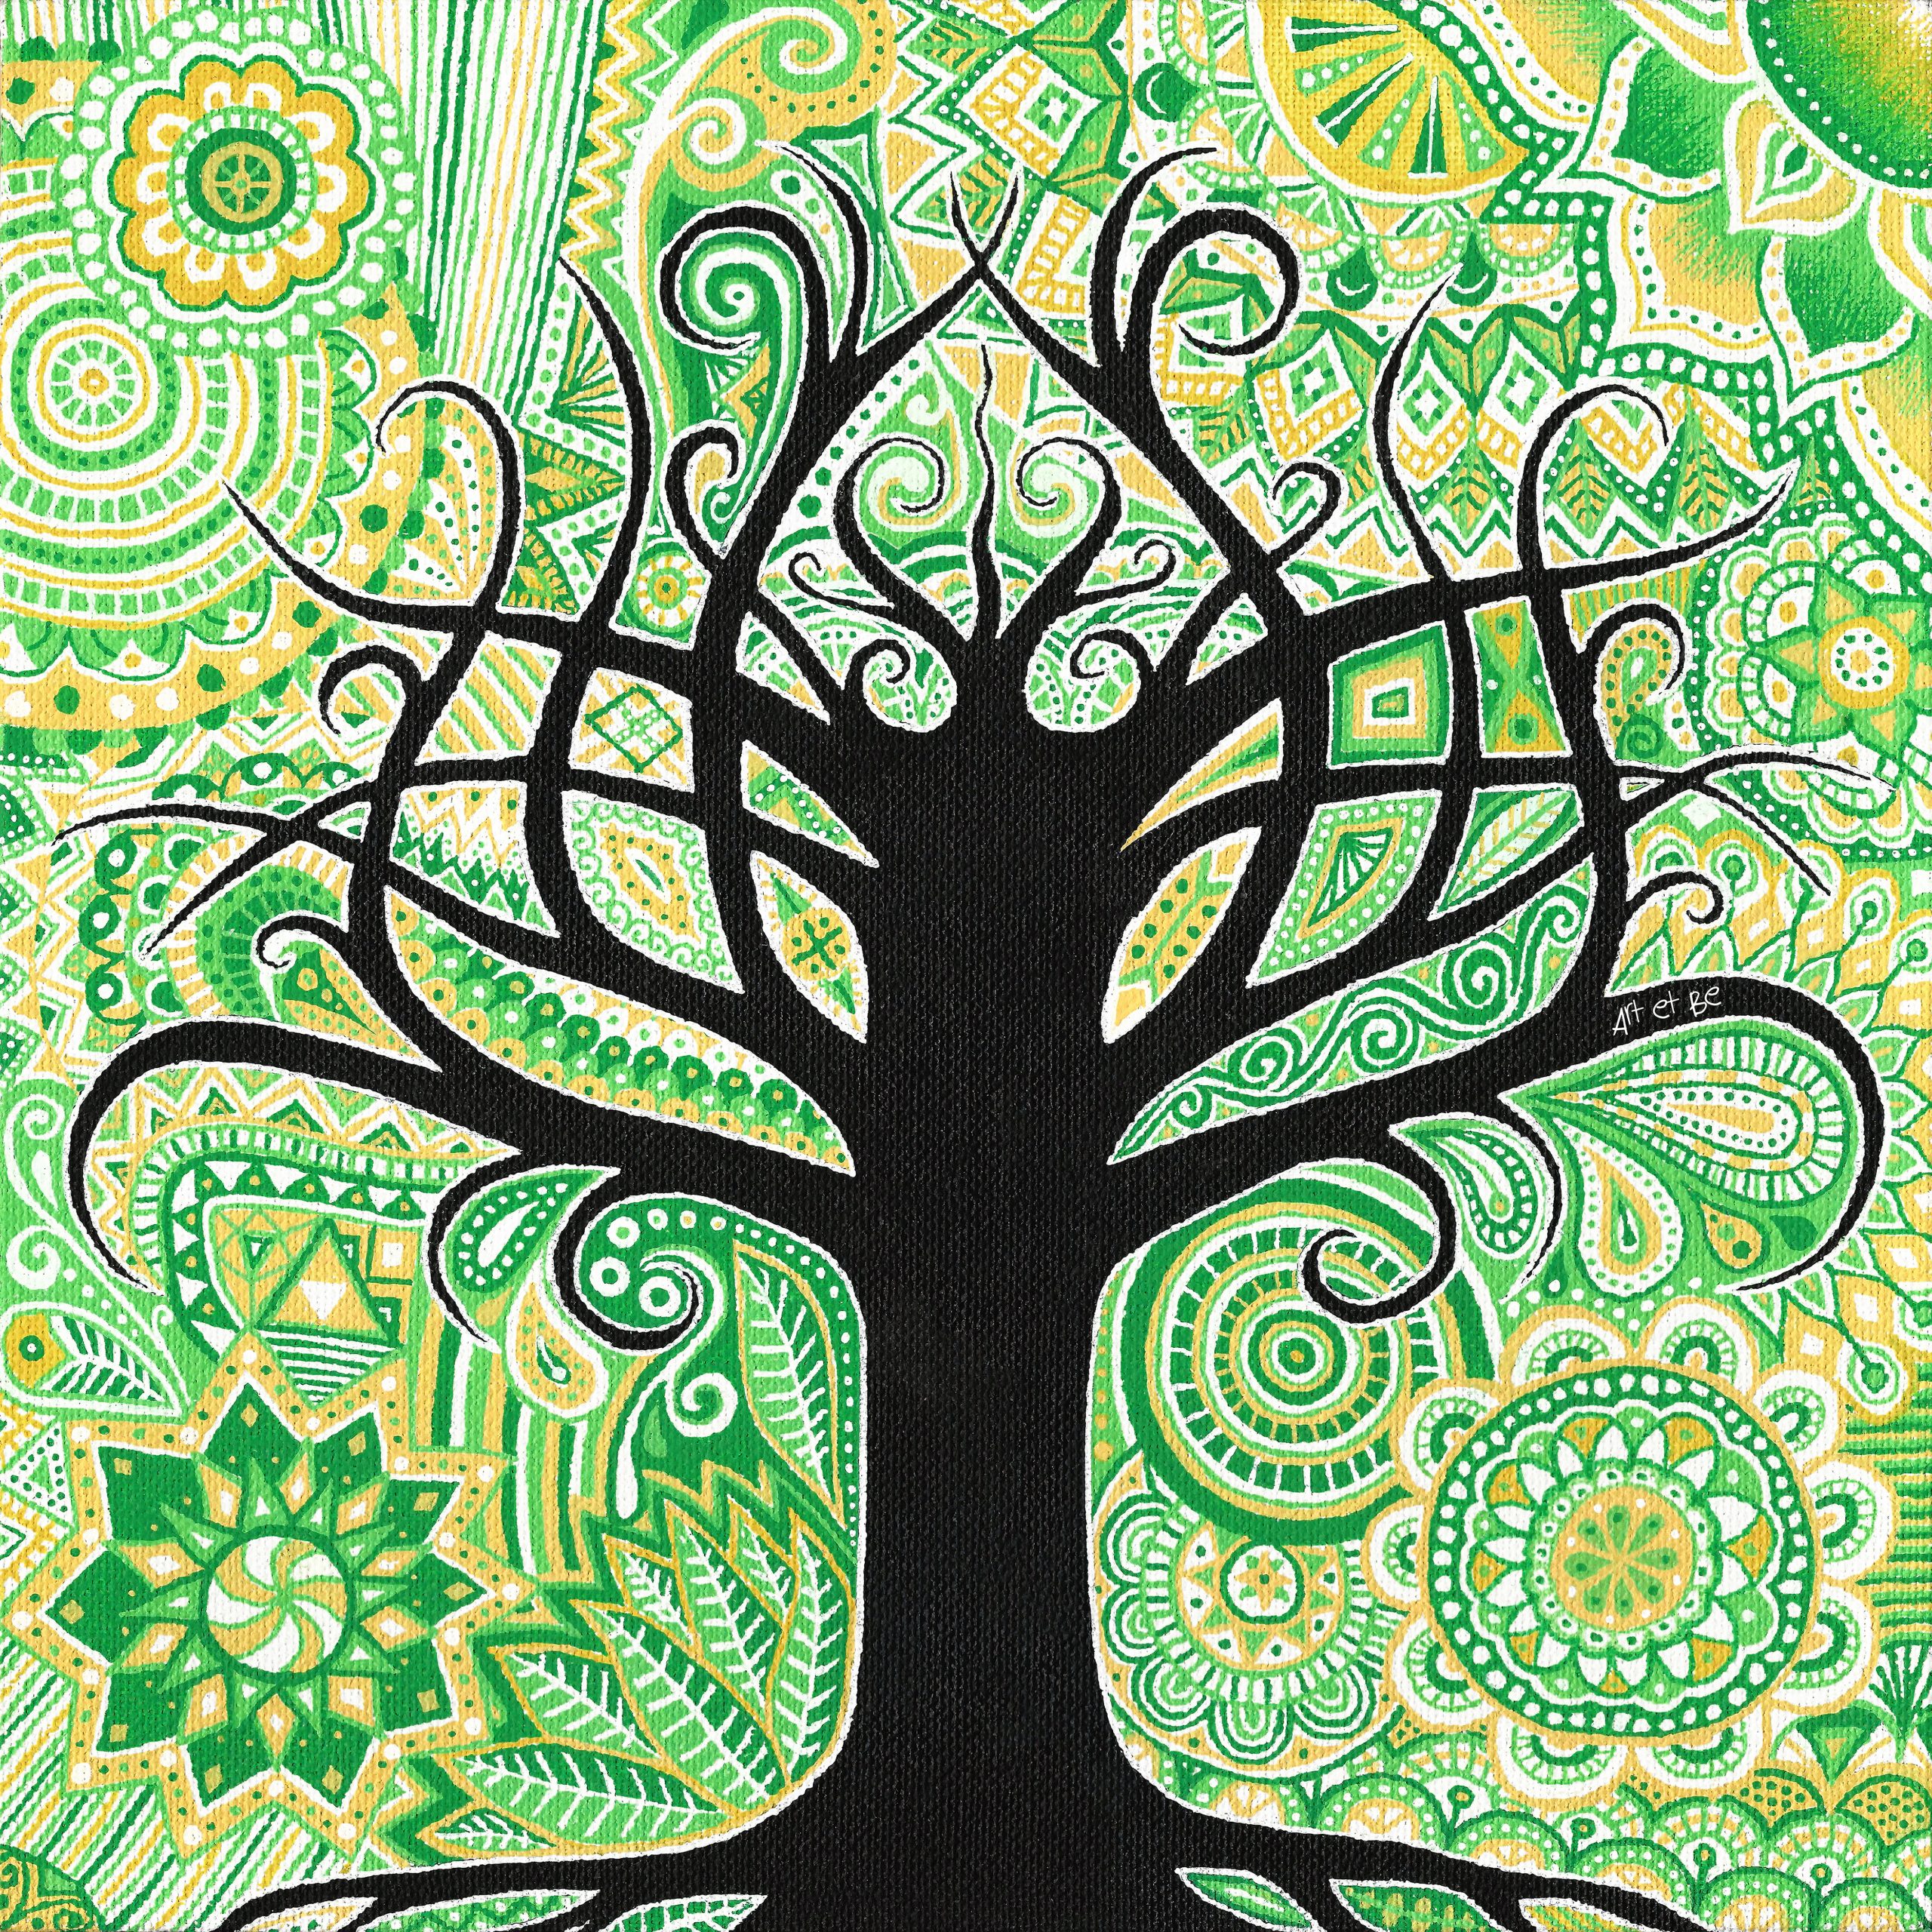 Ком дерево жизни. "Tree of Life" ("дерево жизни") by degree. Jsab Tree of Life. Усман дерево жизни. Картина дерево жизни в интерьере.